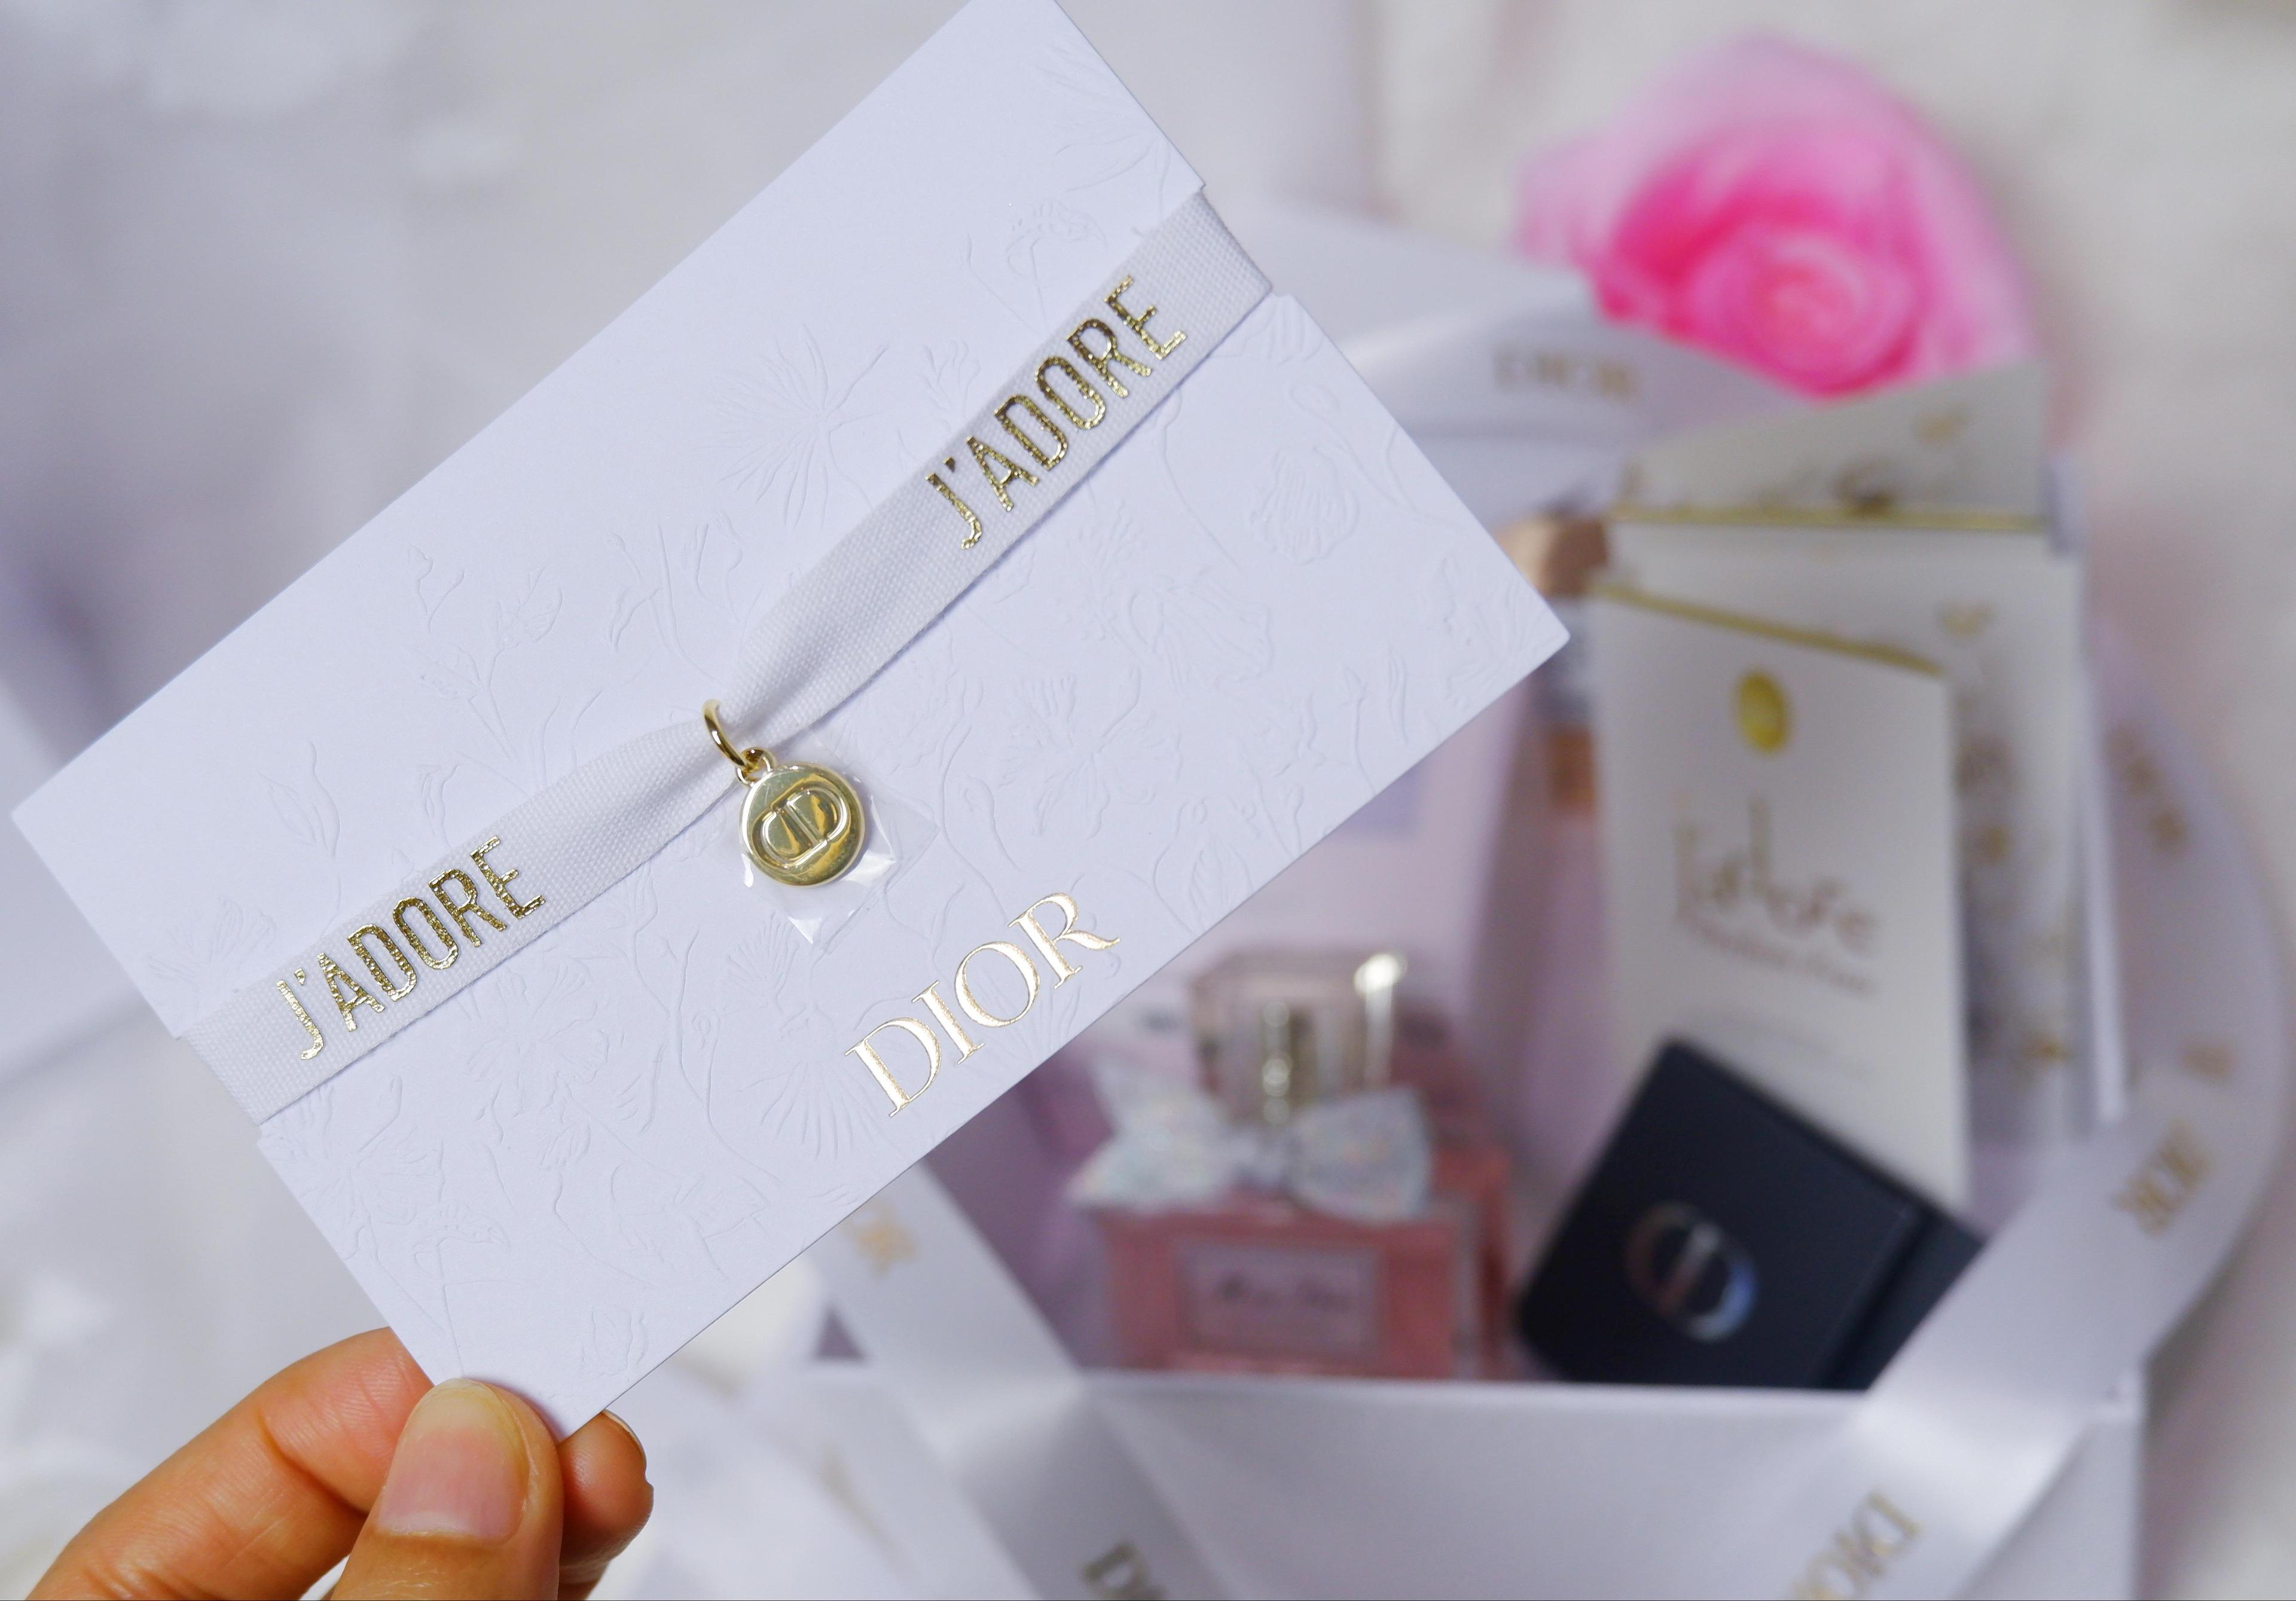 ภาพหน้าปก How to ได้จี้ Dior … สวยมาก ไฮโซ หรู ลูกคุณมากค่าาาา ❤️ ที่:2